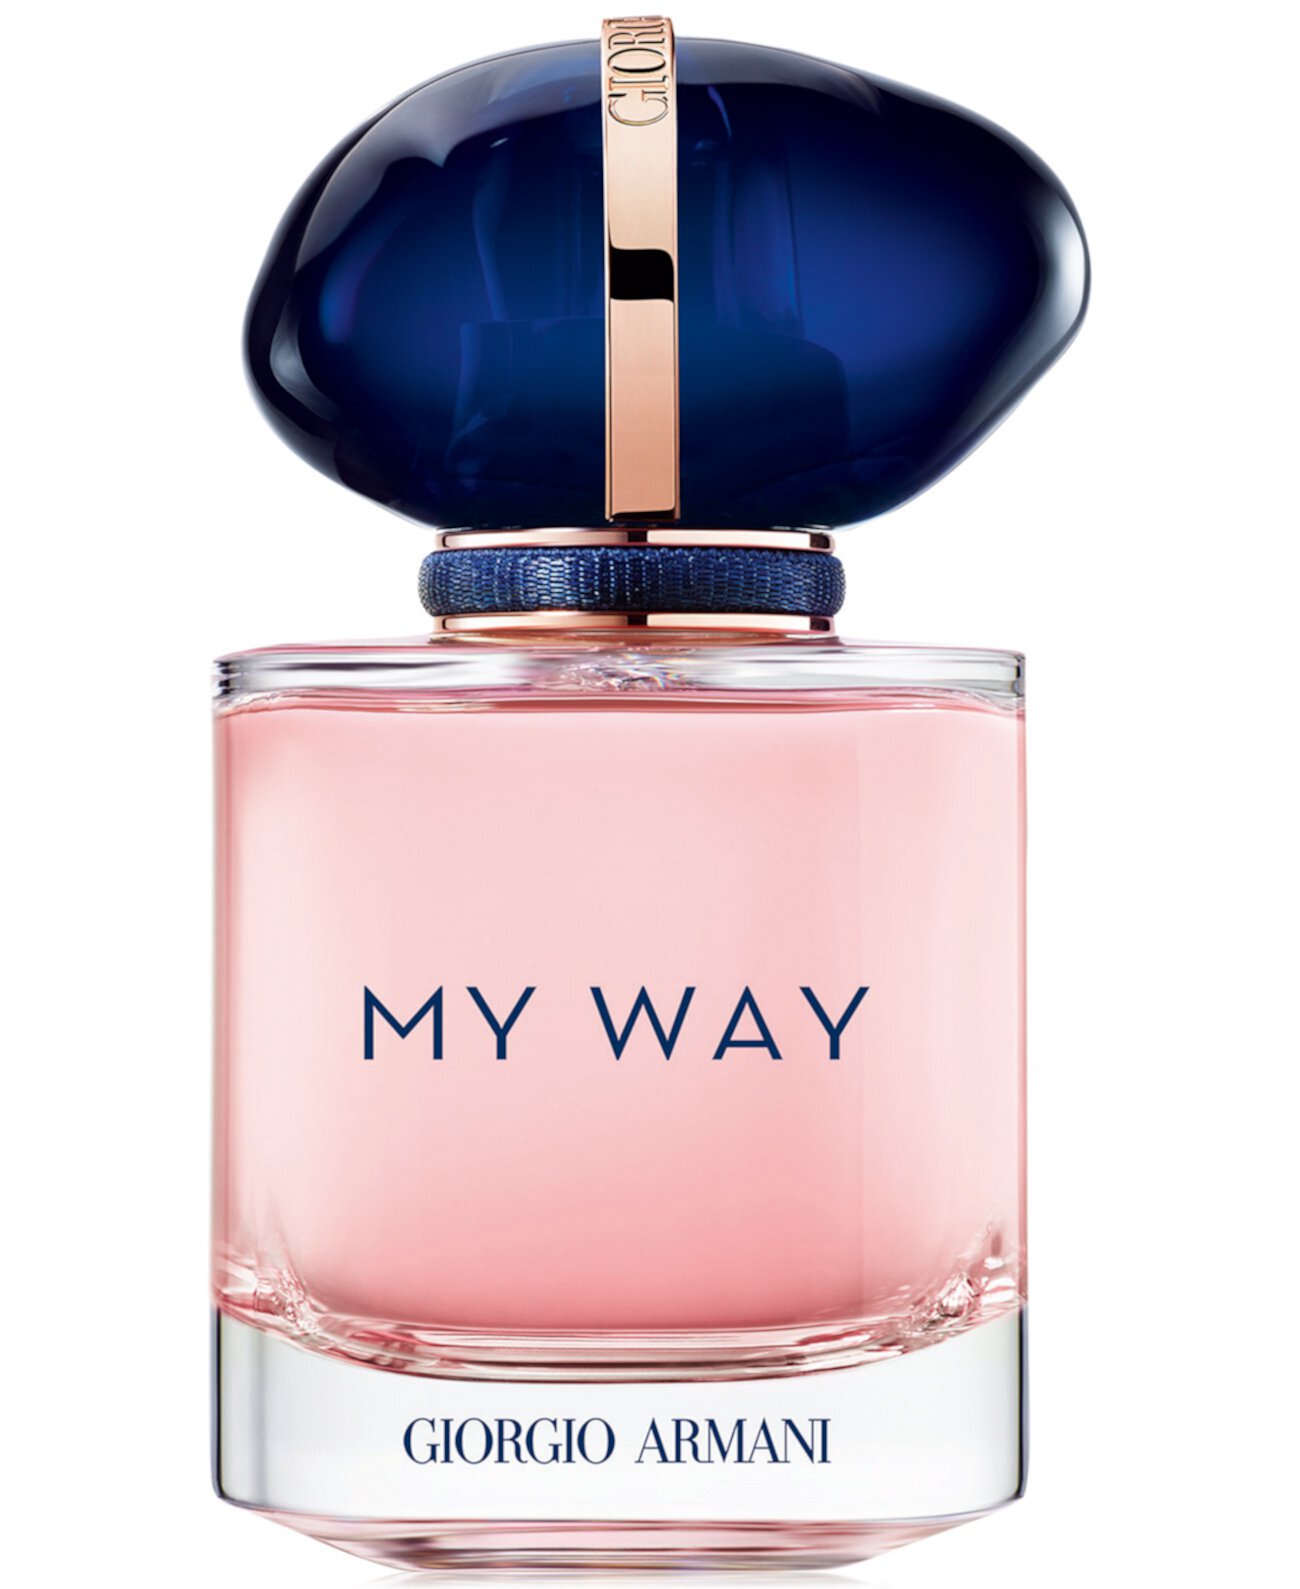 My Way Eau de Parfum Spray, 1 унция. Giorgio Armani